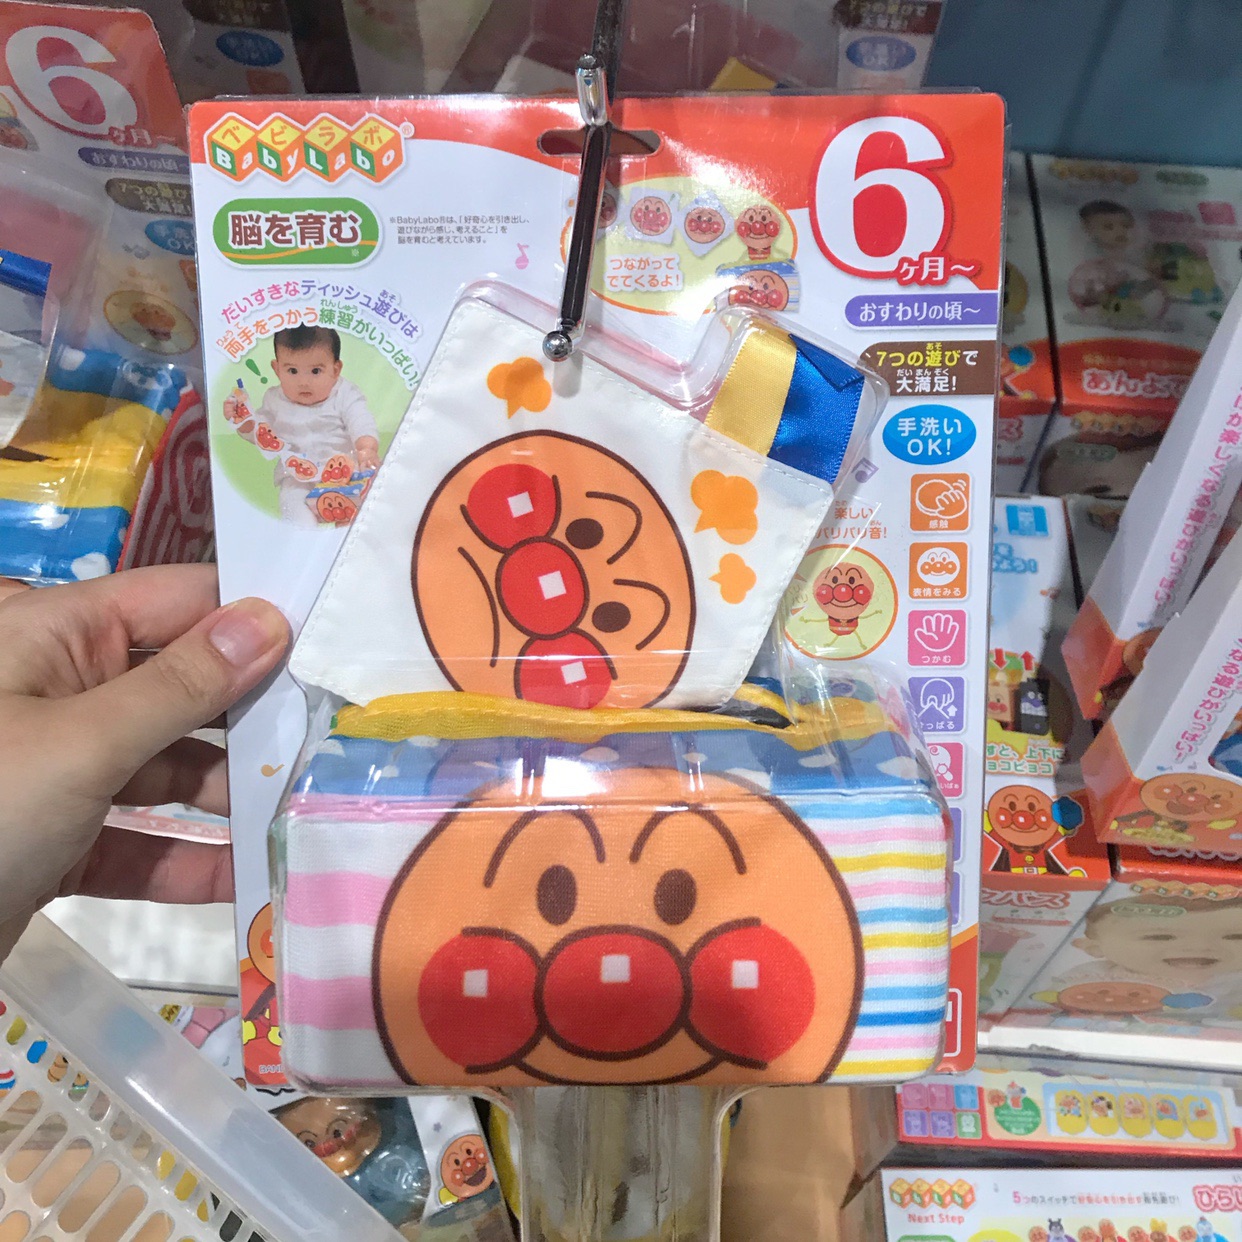 现货日本面包超人儿童安抚模拟布艺抽纸巾盒带响纸玩具6个月宝宝